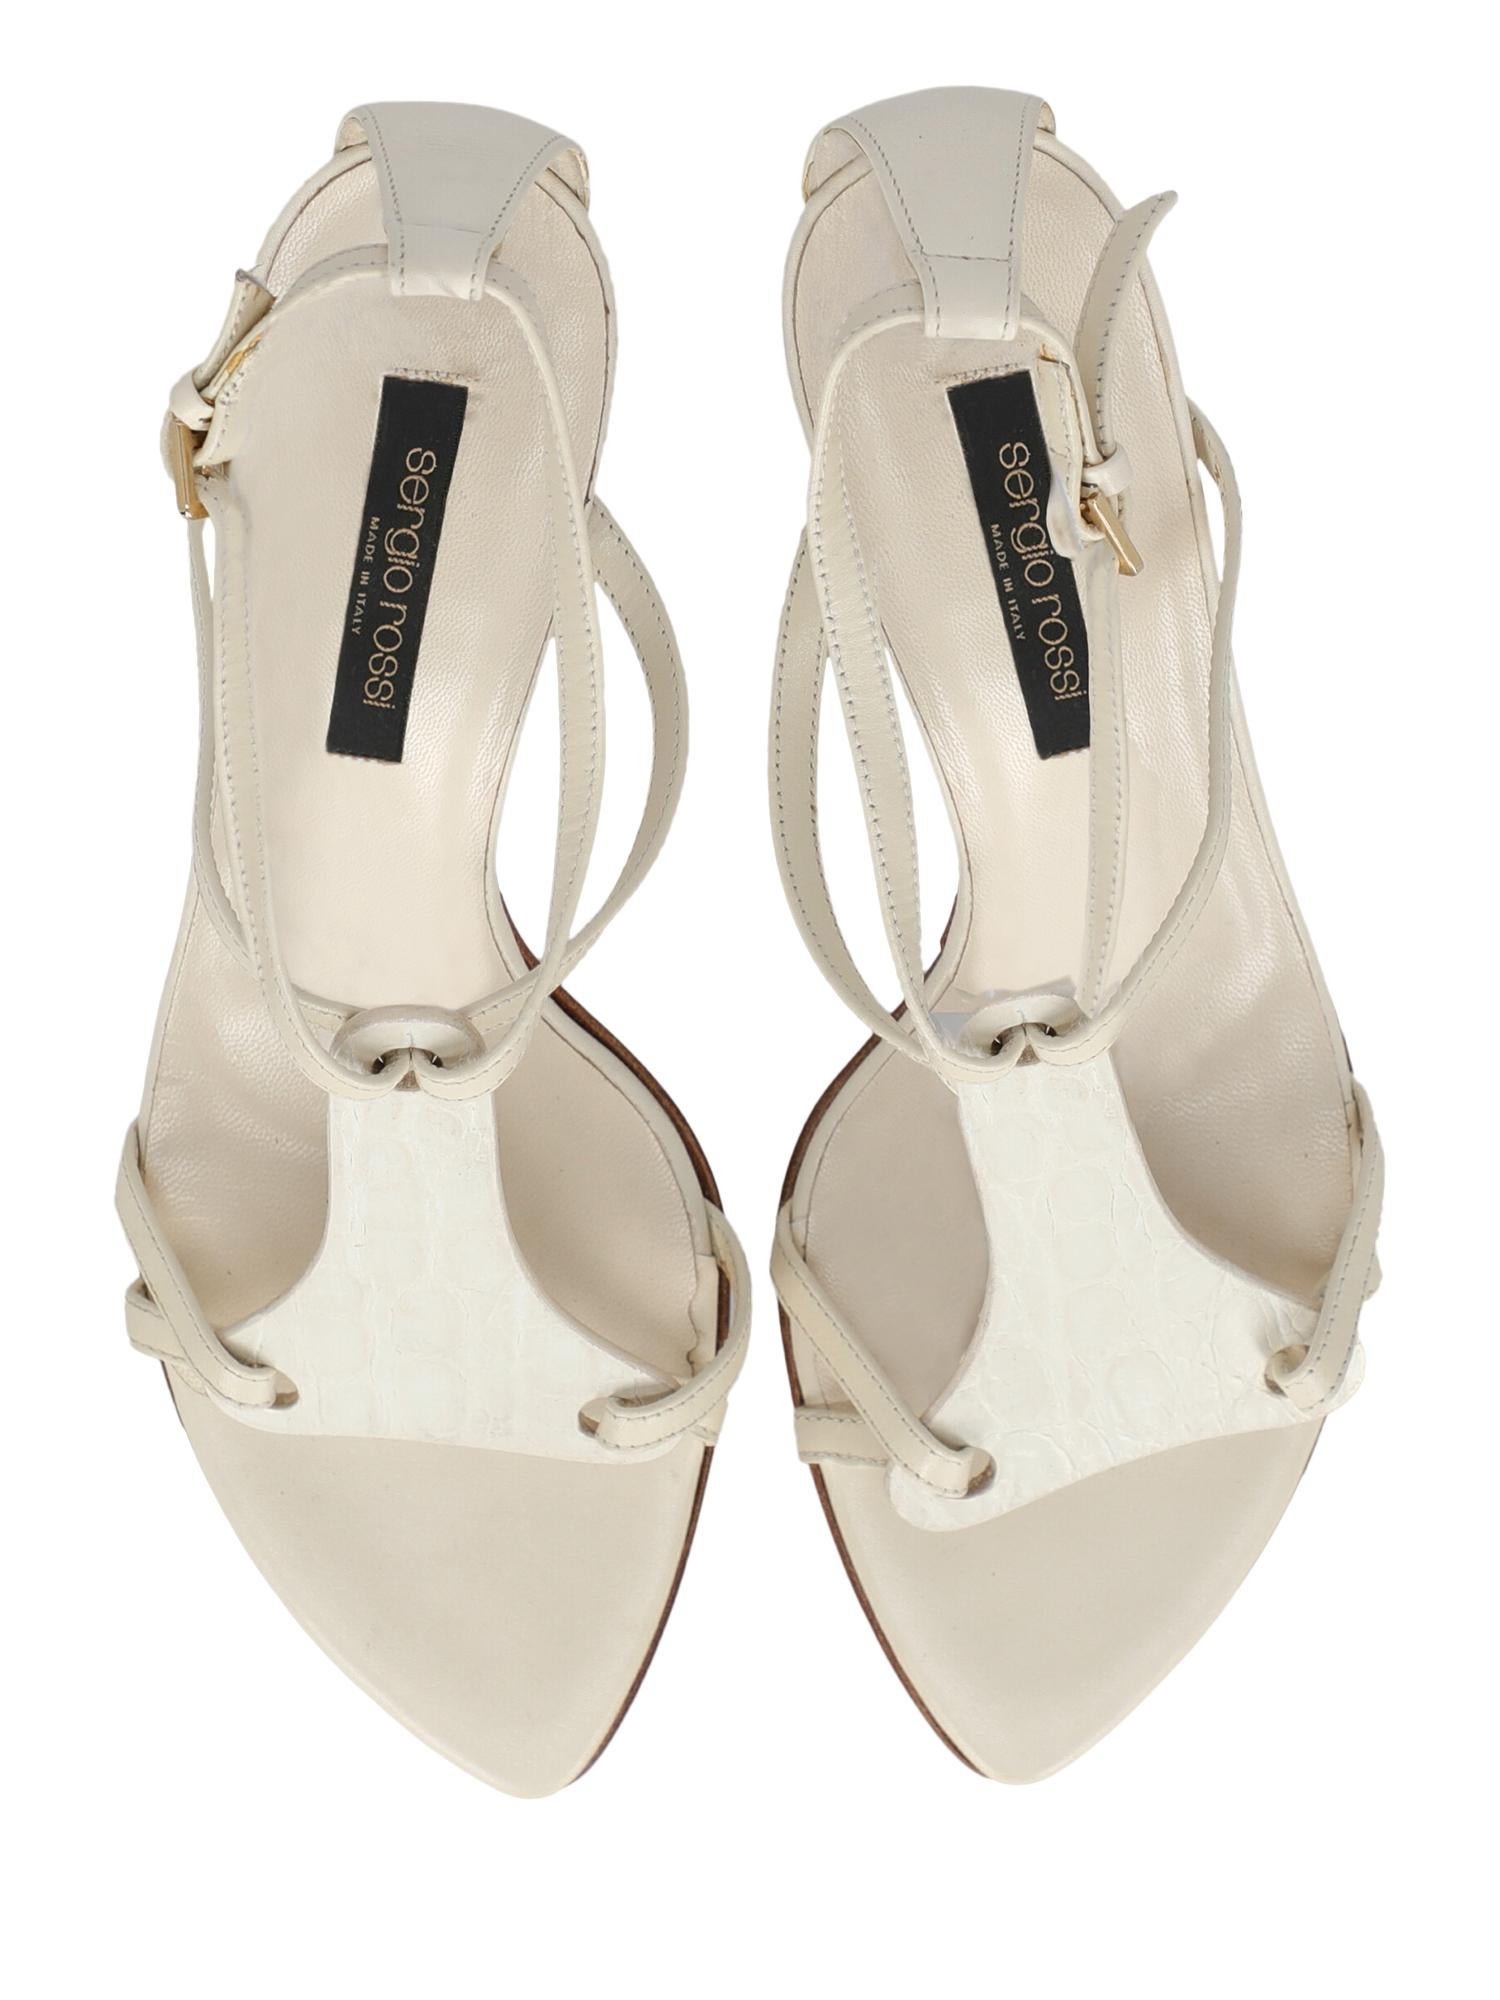 Sergio Rossi  Women   Sandals  White Leather EU 36 For Sale 1